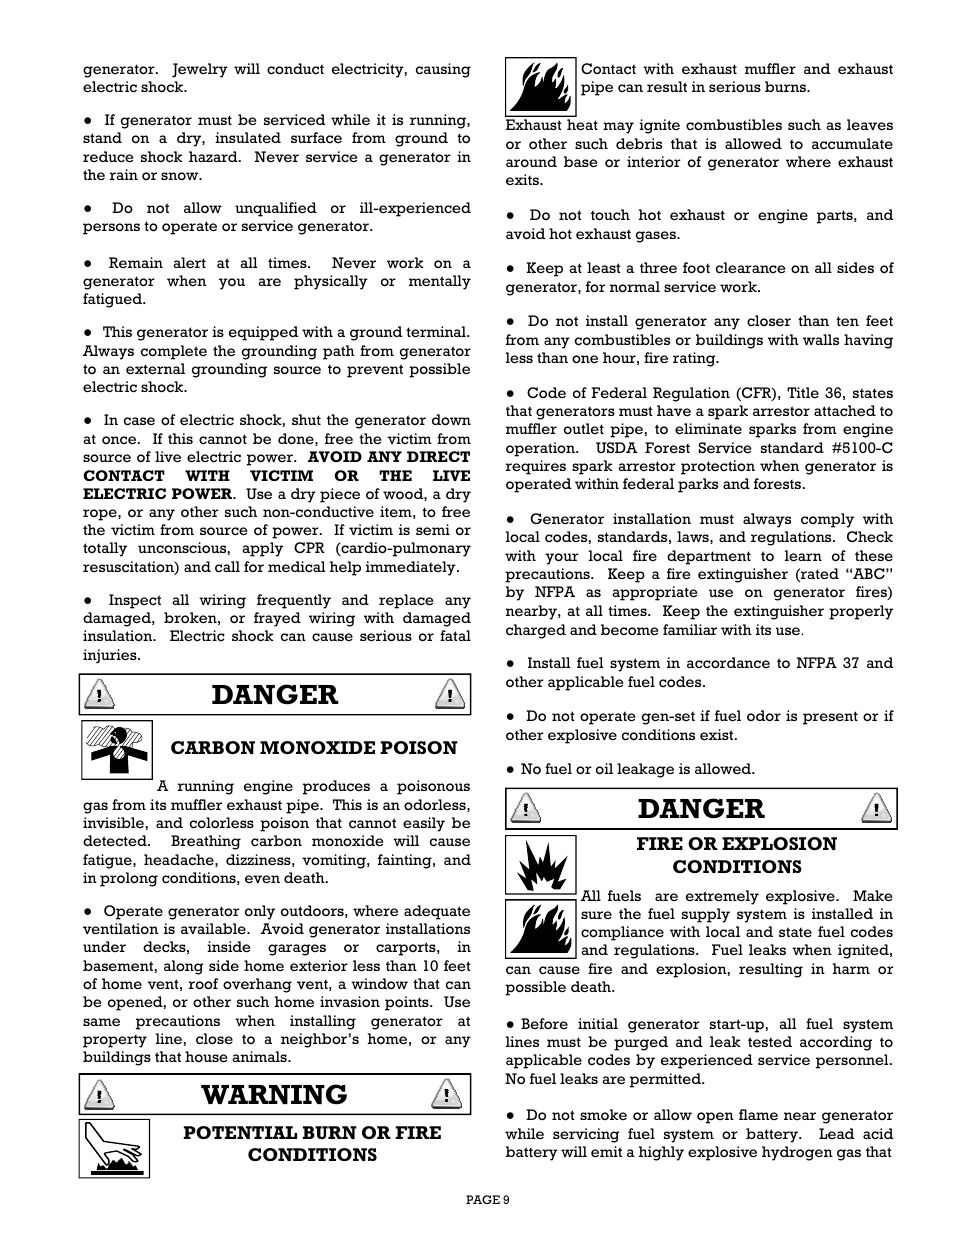 Danger, Warning | Gillette Generators SPMD-2500 THRU SPMD-4000 User Manual | Page 9 / 27